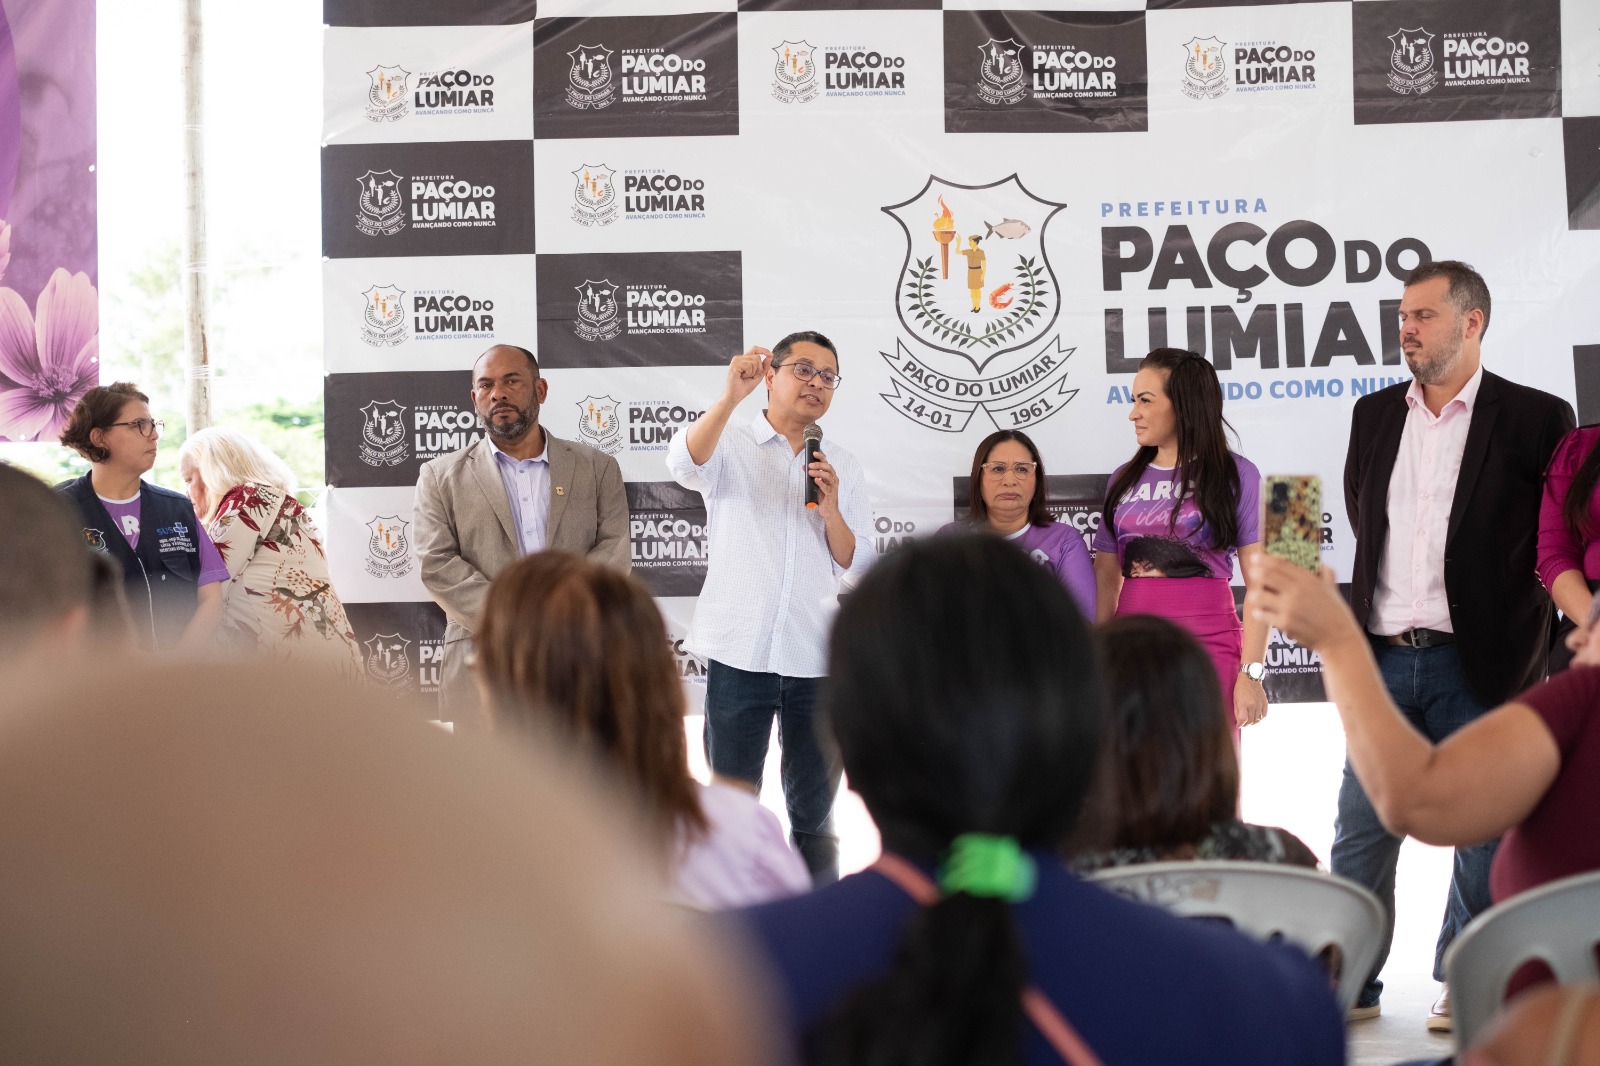 Carlos Lula destacou parceria para levar serviços da Carreta da Mulher a Paço do Lumiar